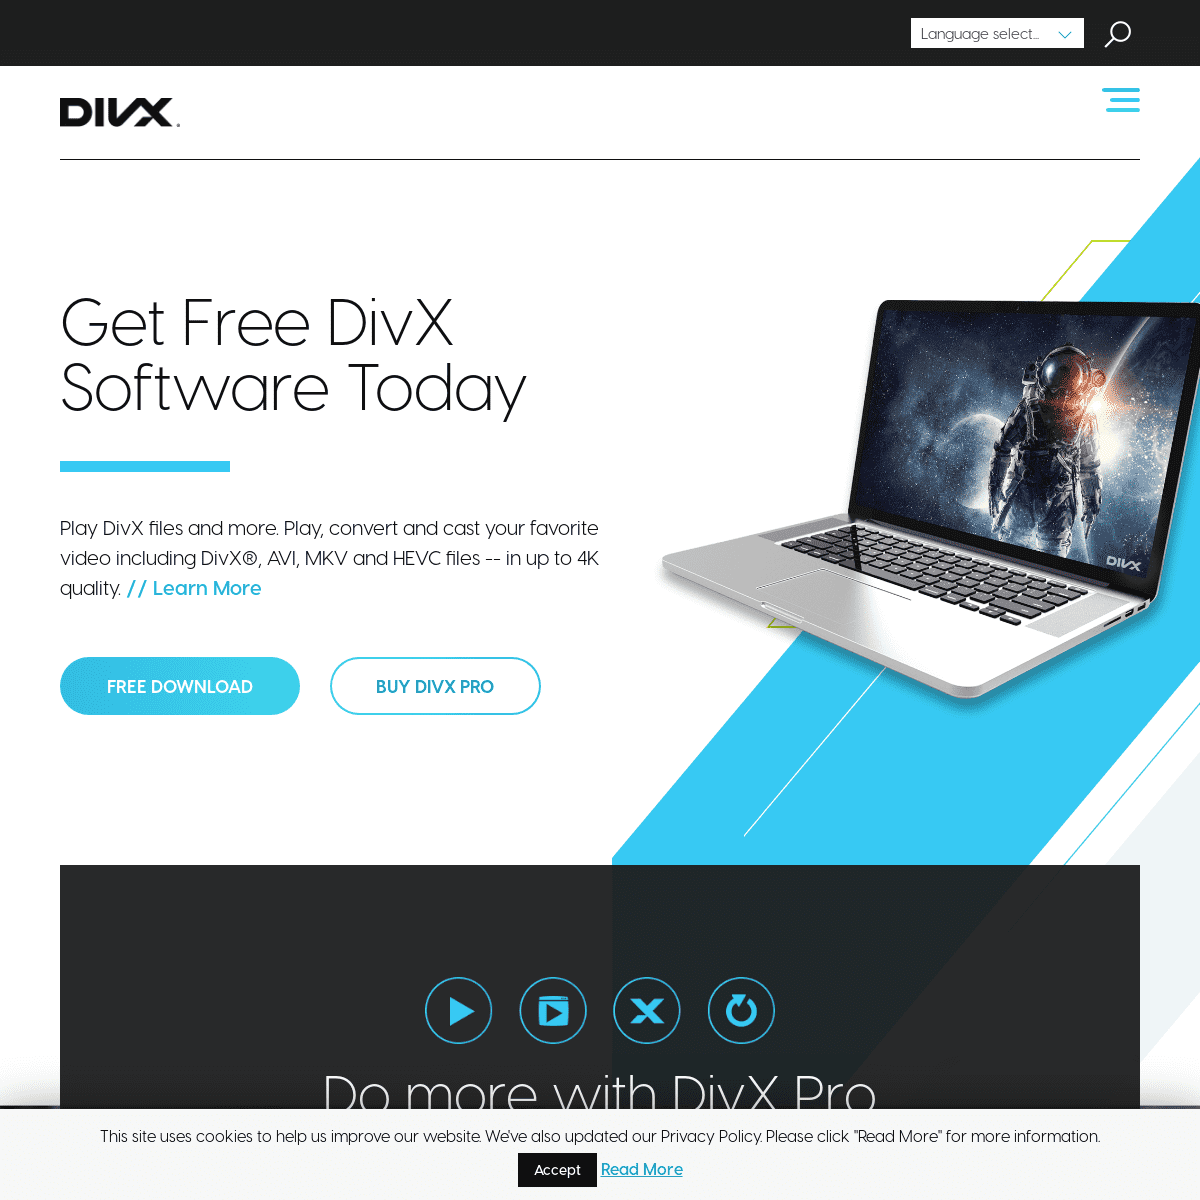 A complete backup of divx.com